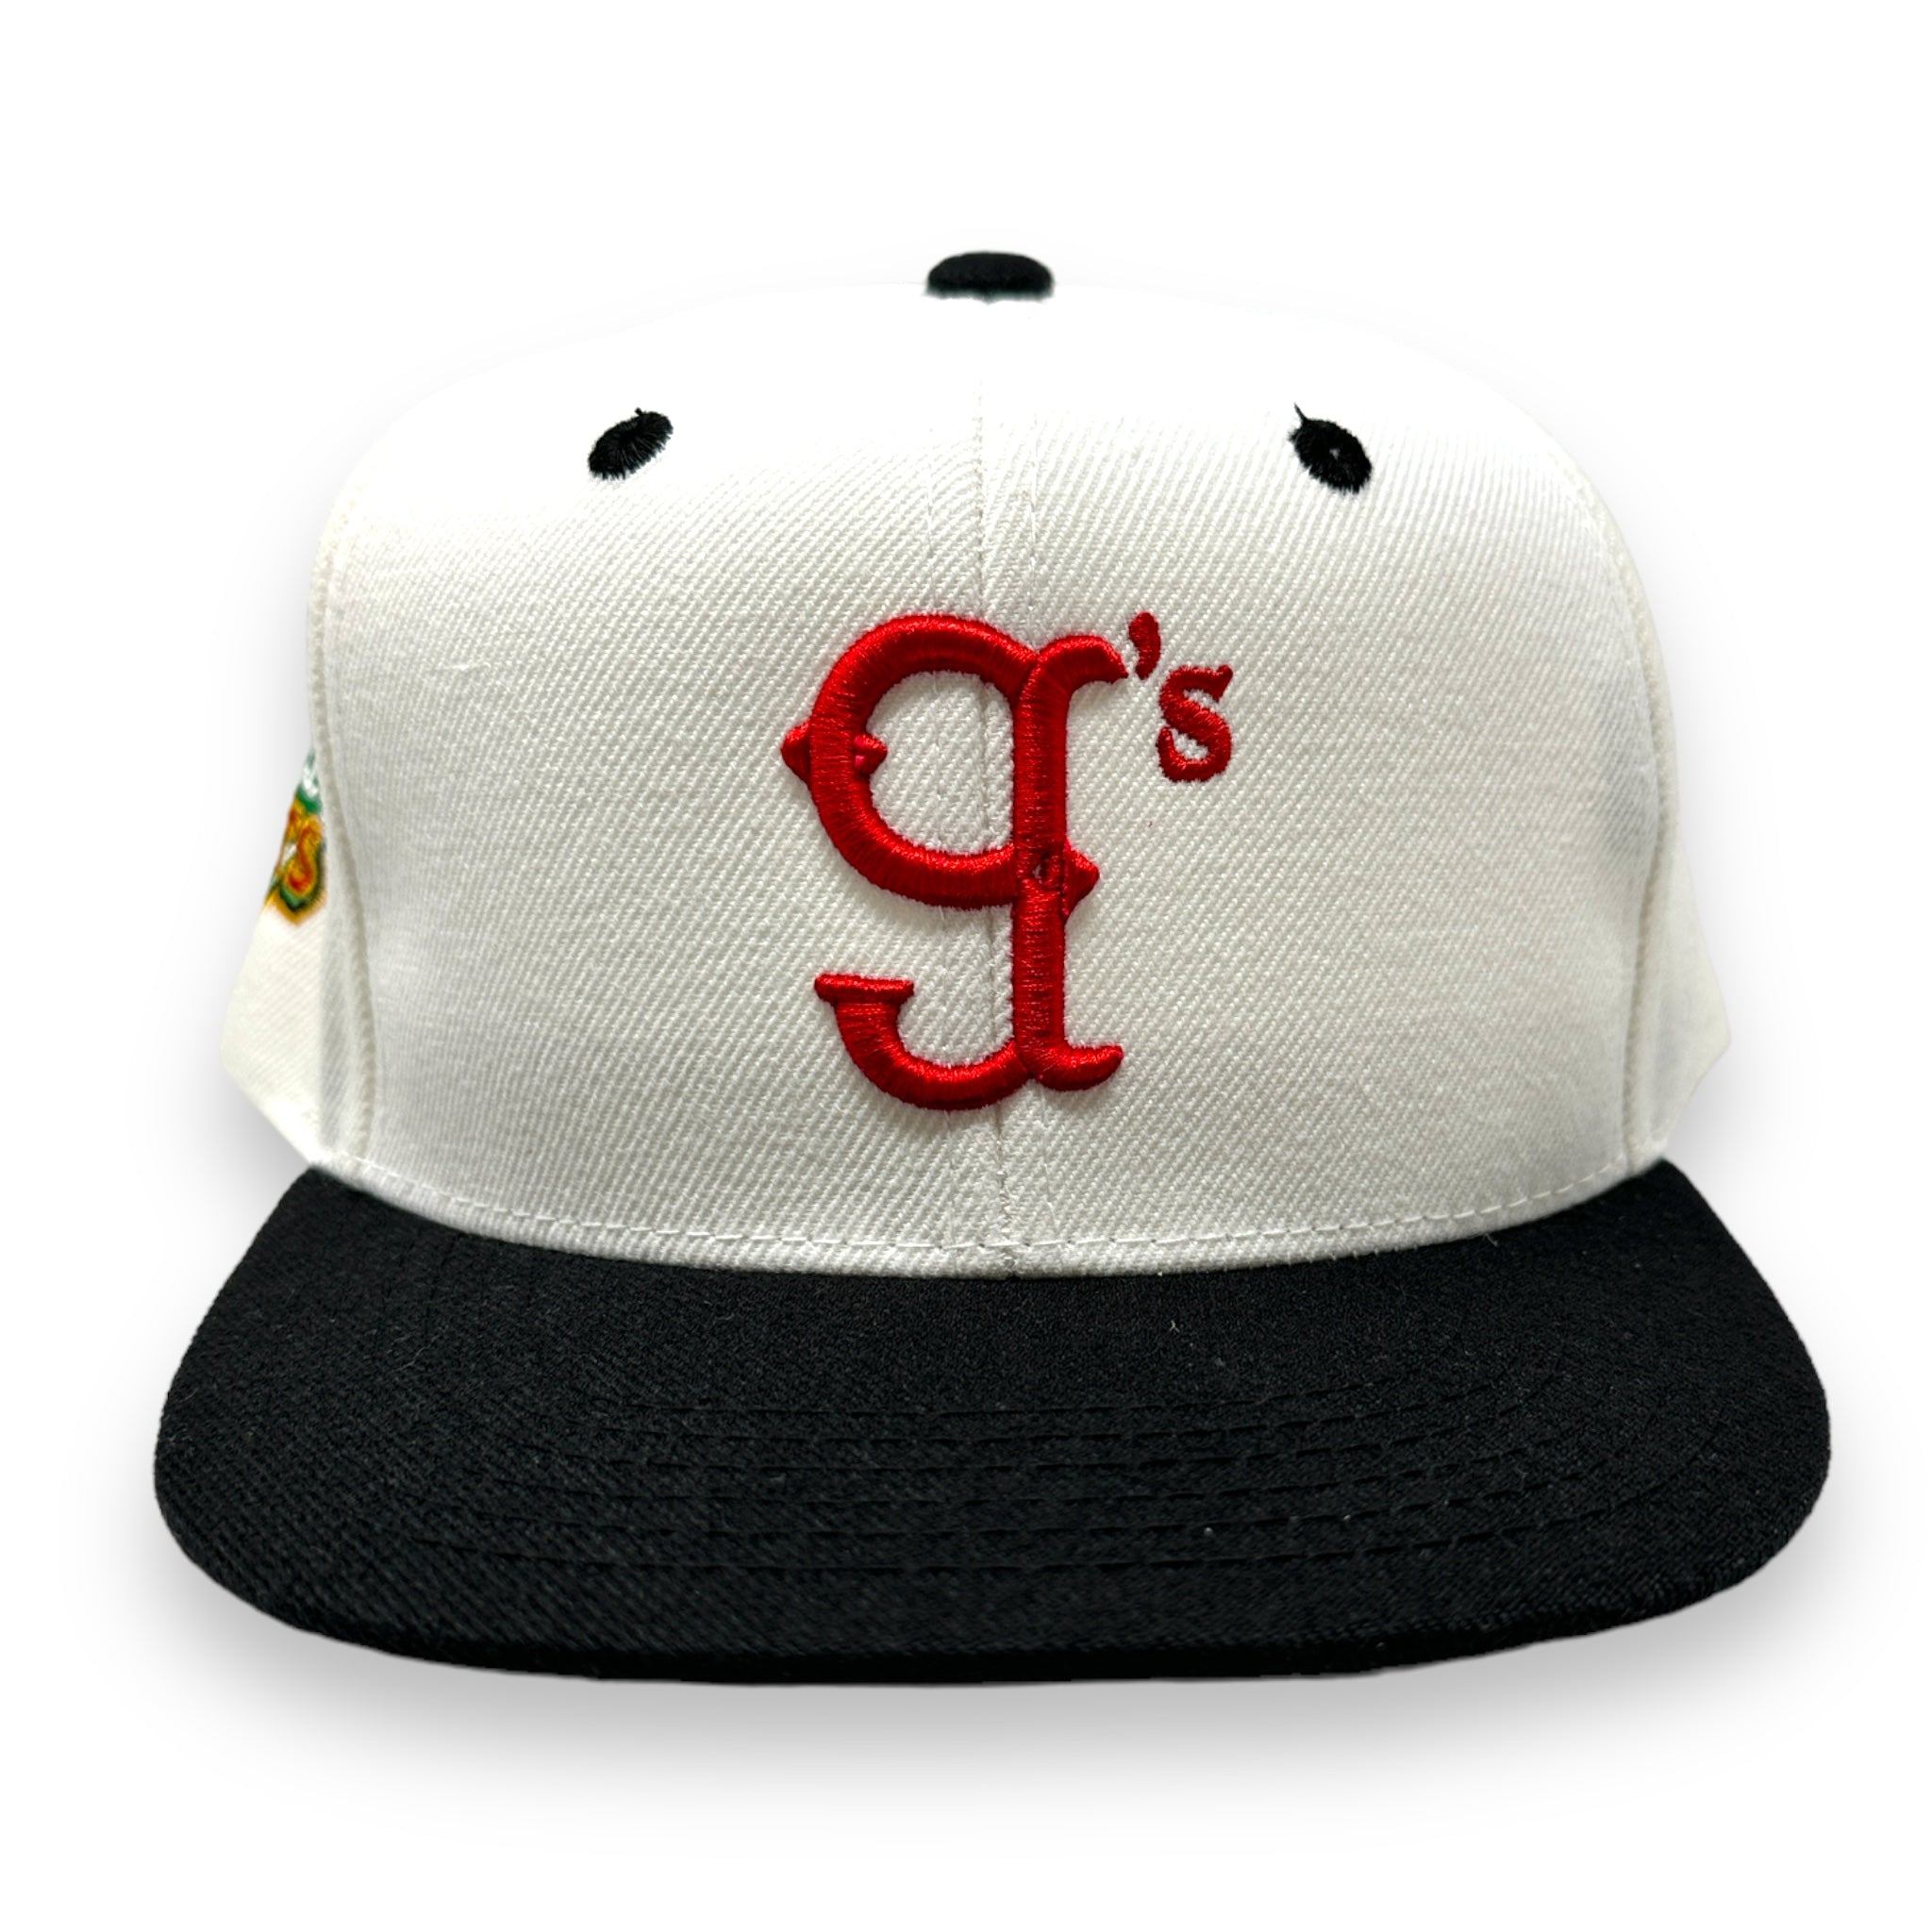 The Little g's Custom Snap Back Hat (White)